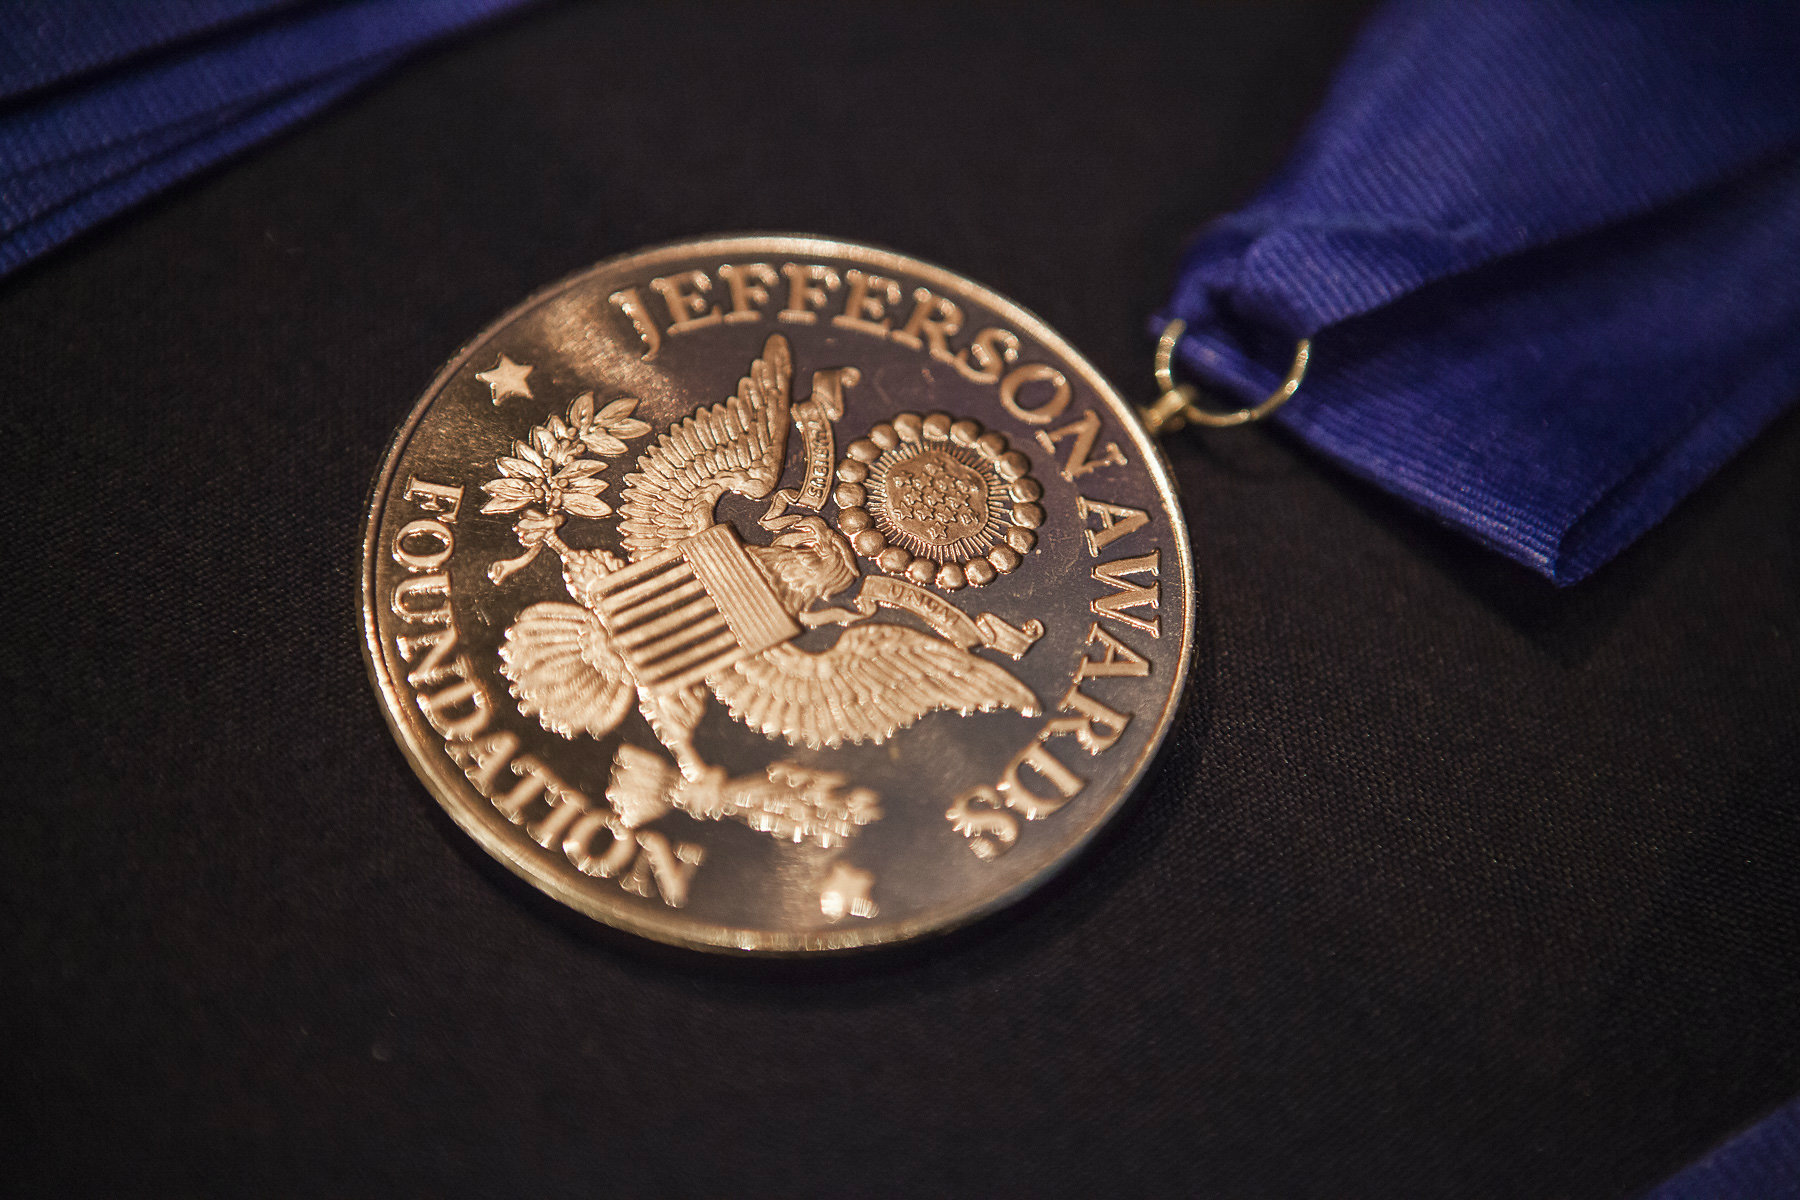 2018 Jefferson Award Ceremony